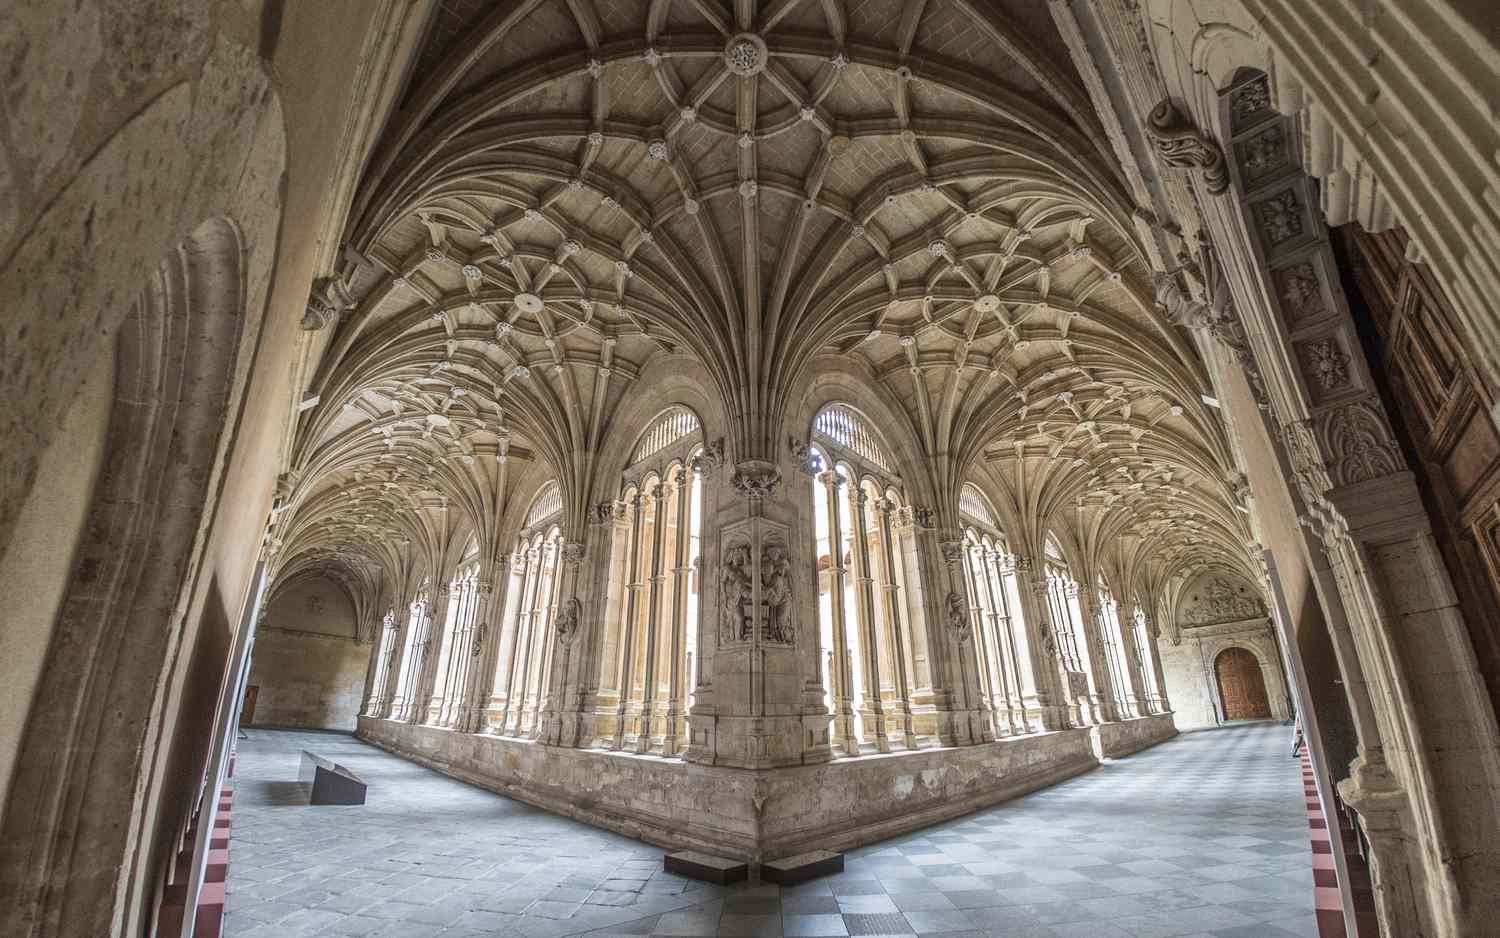 Rippengewölbe in einer gotischen Kathedrale.